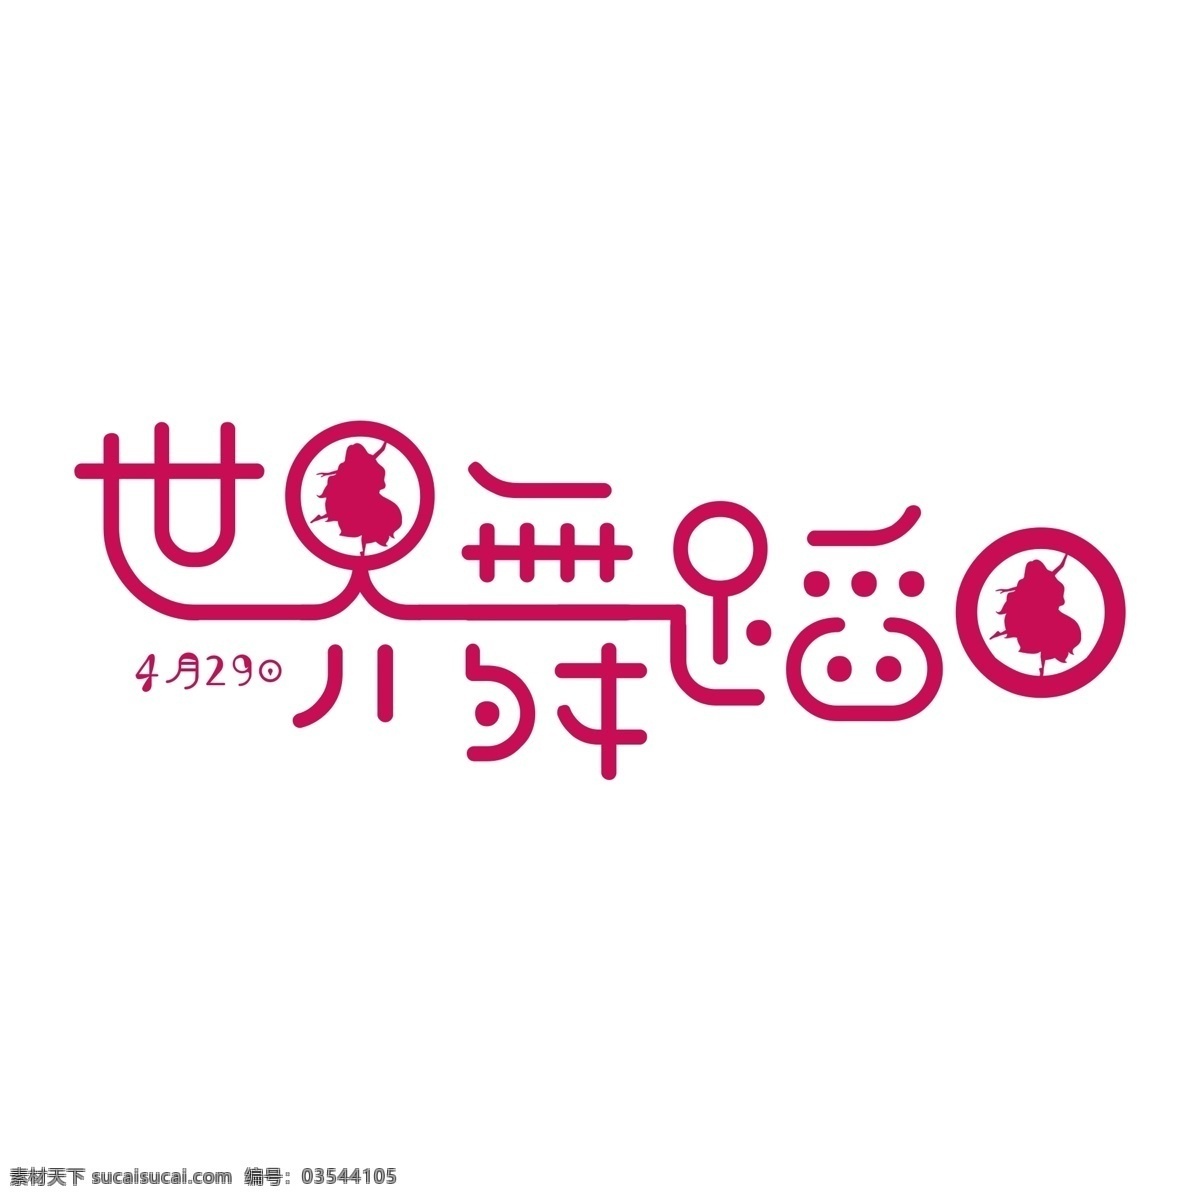 原创 世界 舞蹈 日 艺术 字体 世界舞蹈日 字 艺术字体设计